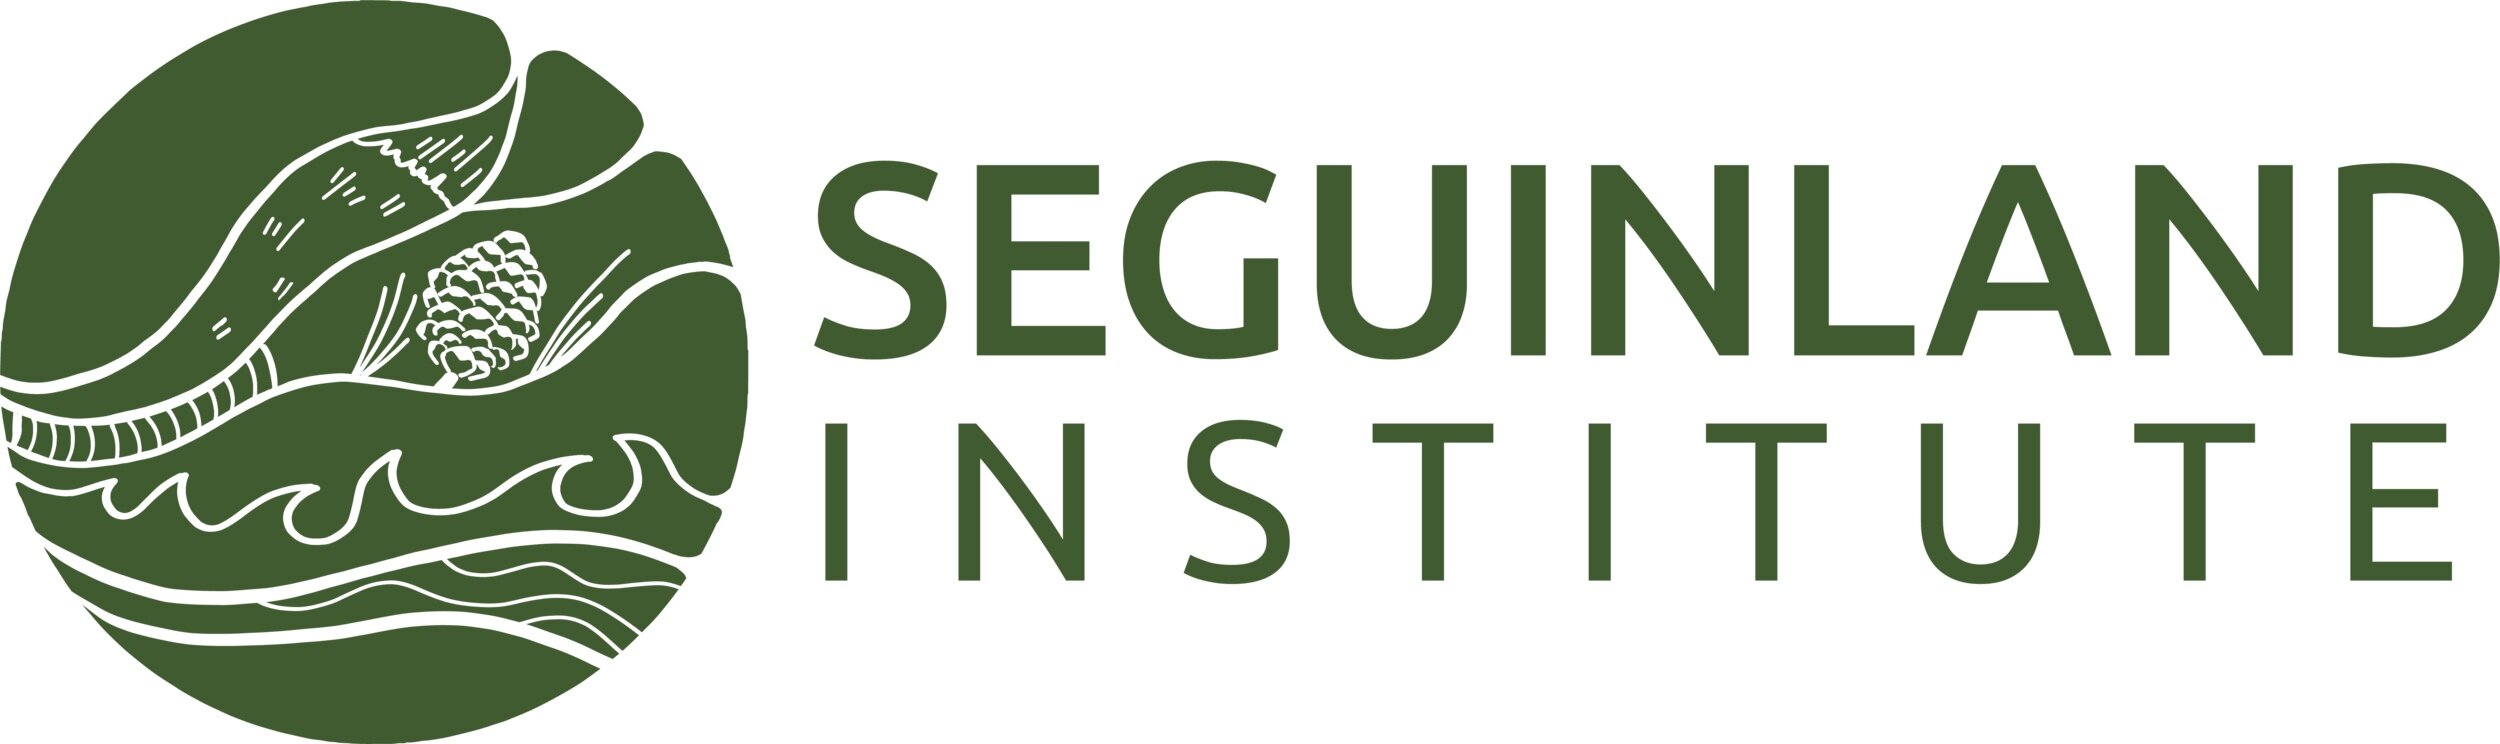 Seguinland Institute.